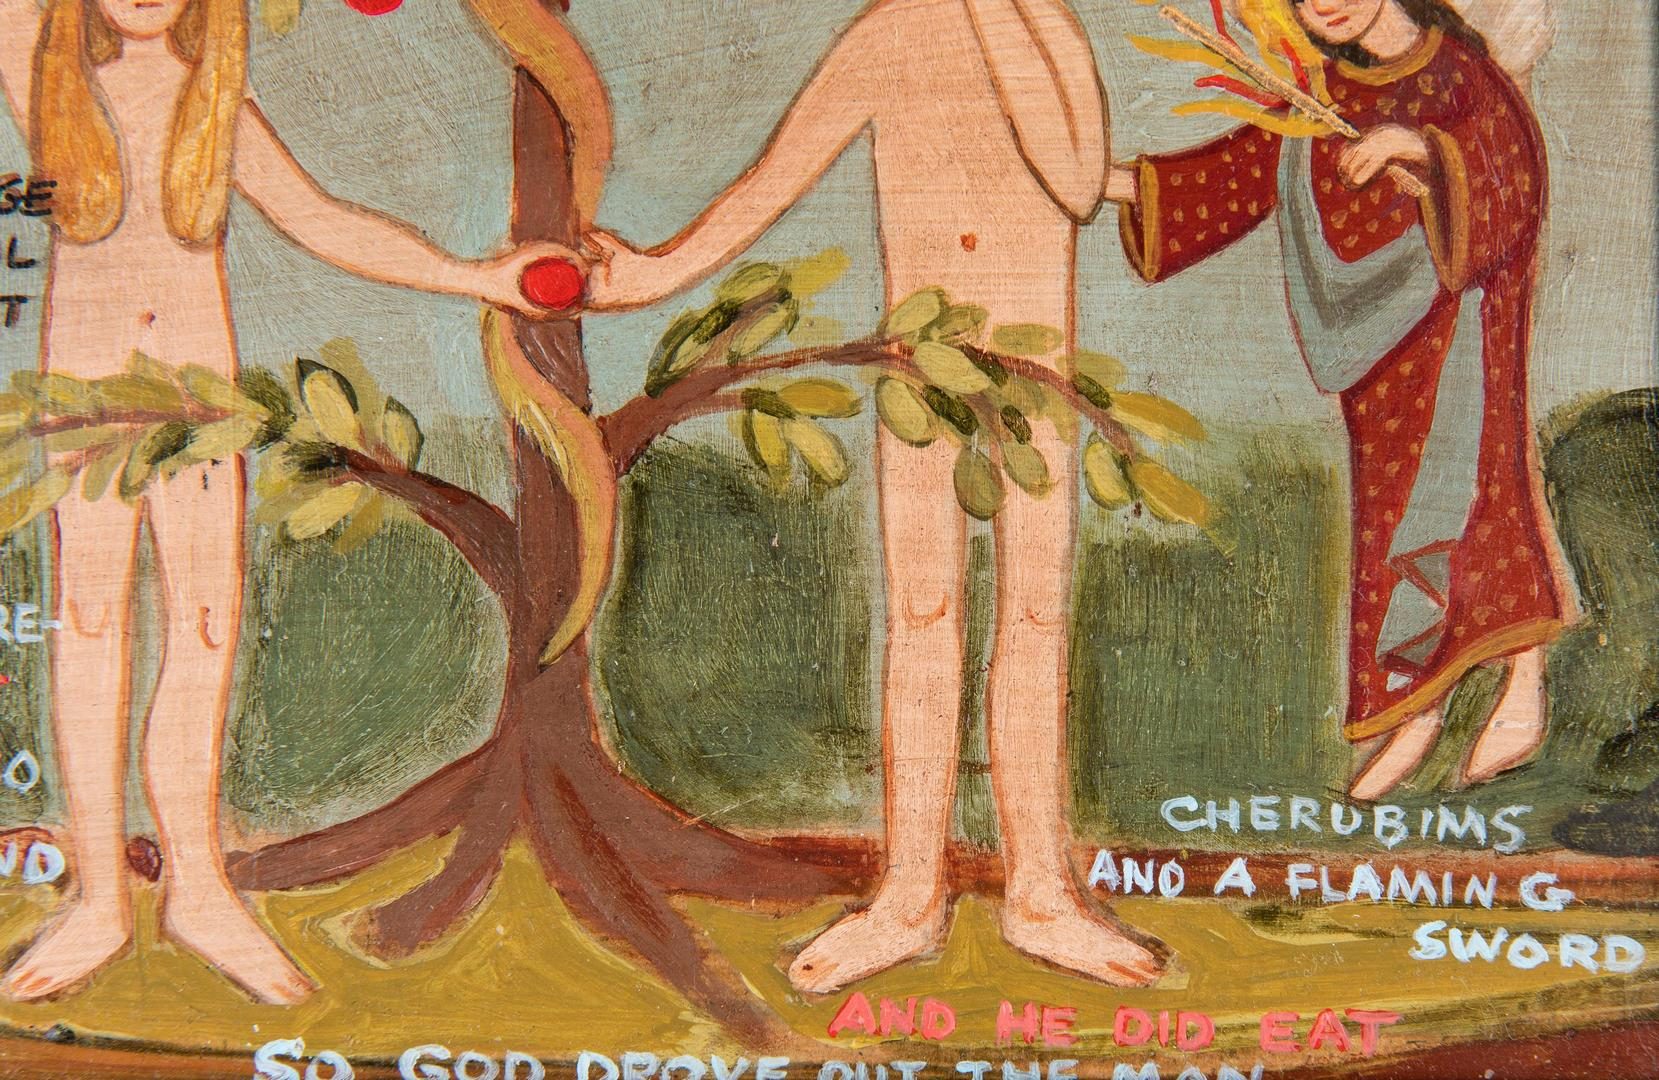 Lot 114: 5 Folk Art Animal Carvings & "Garden of Eden" Painting, 6 items